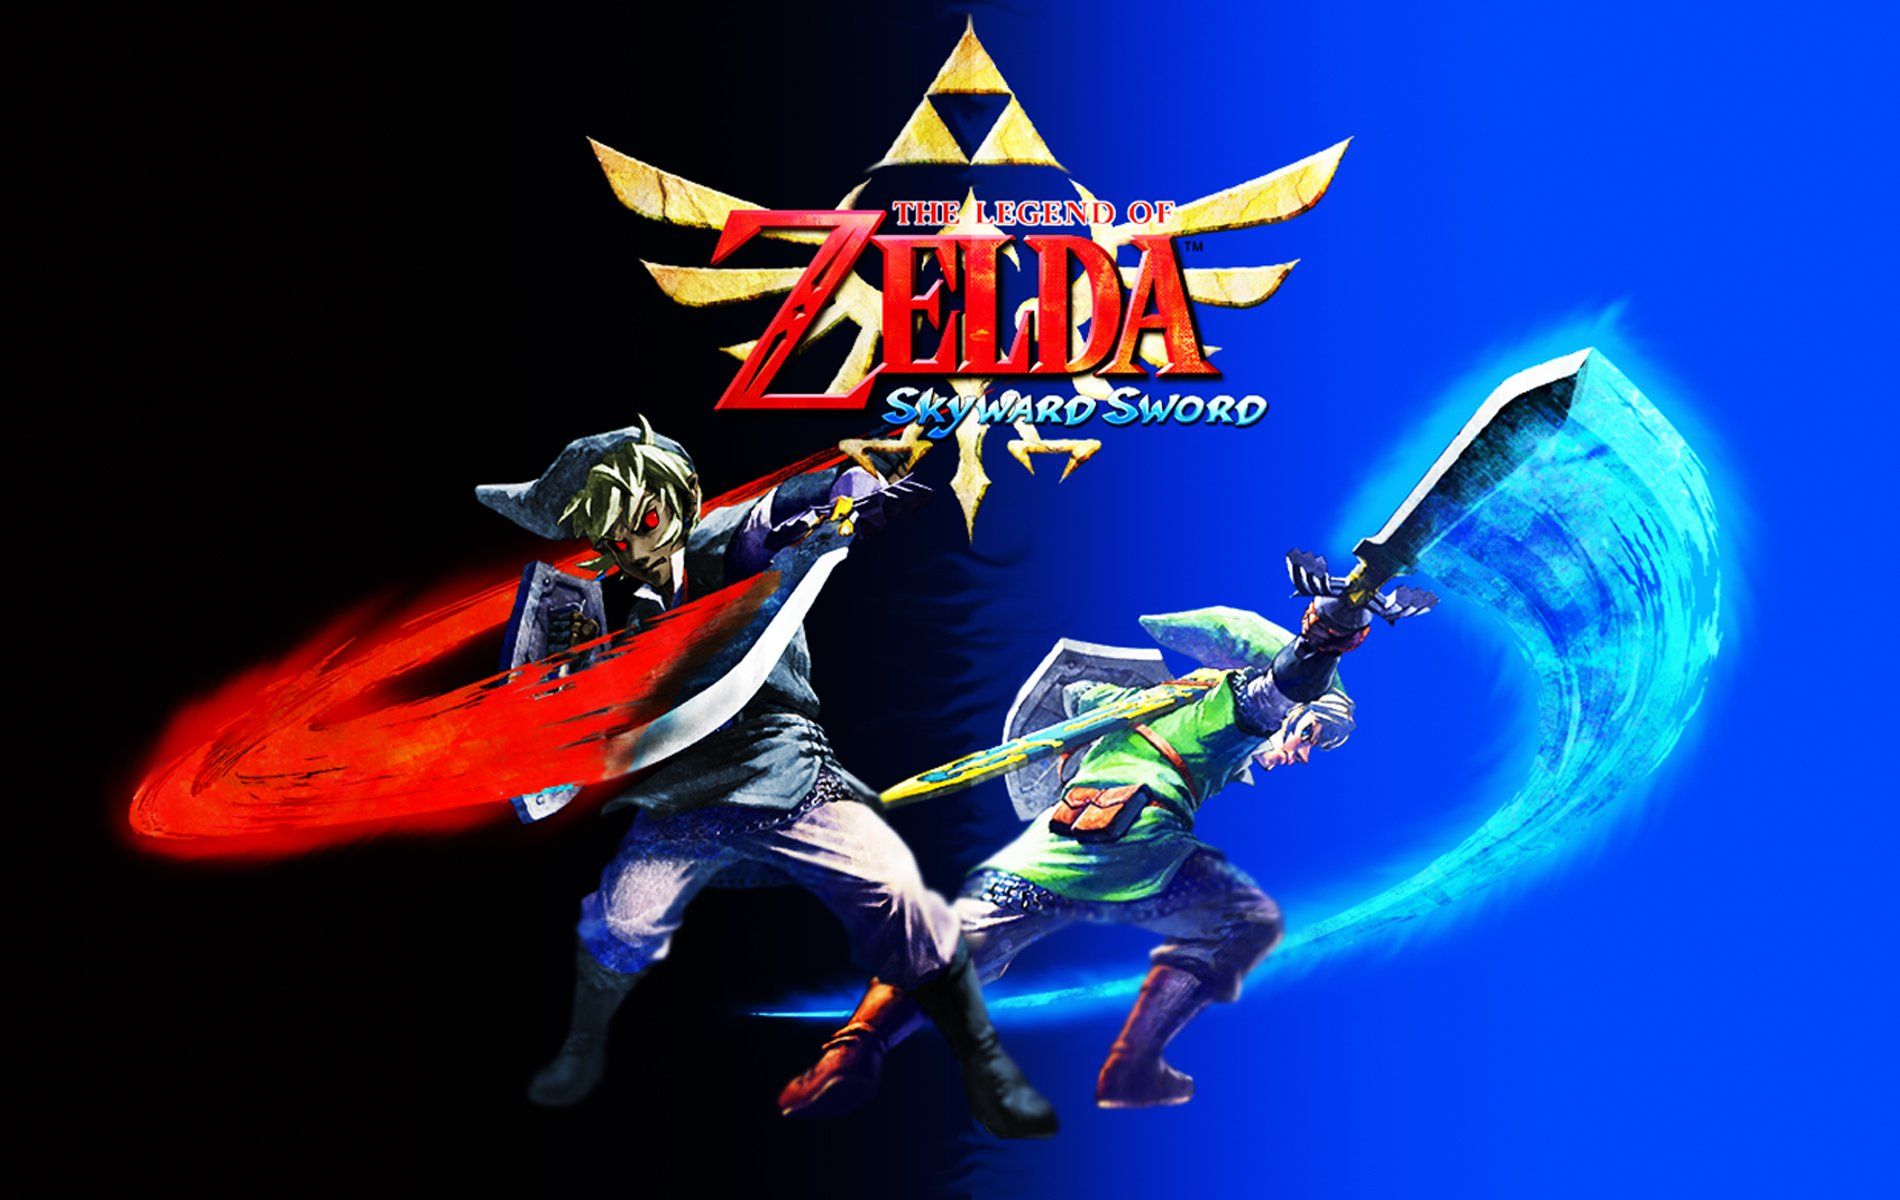 Link The Legend of Zelda Skyward Sword wallpaperx1200